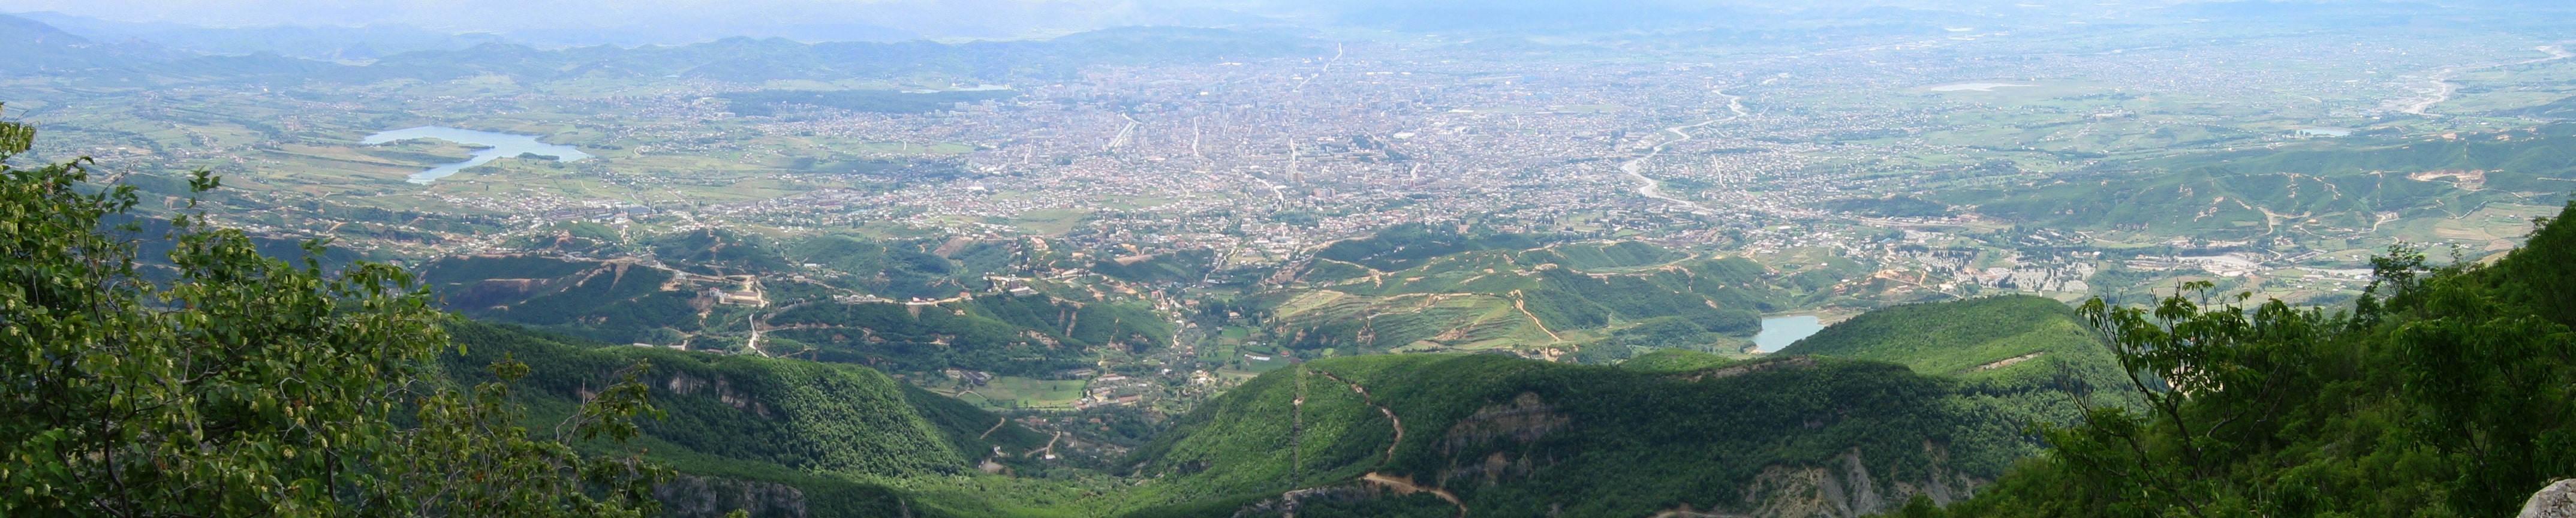 Panoramic view of Tirana from mount Dajti